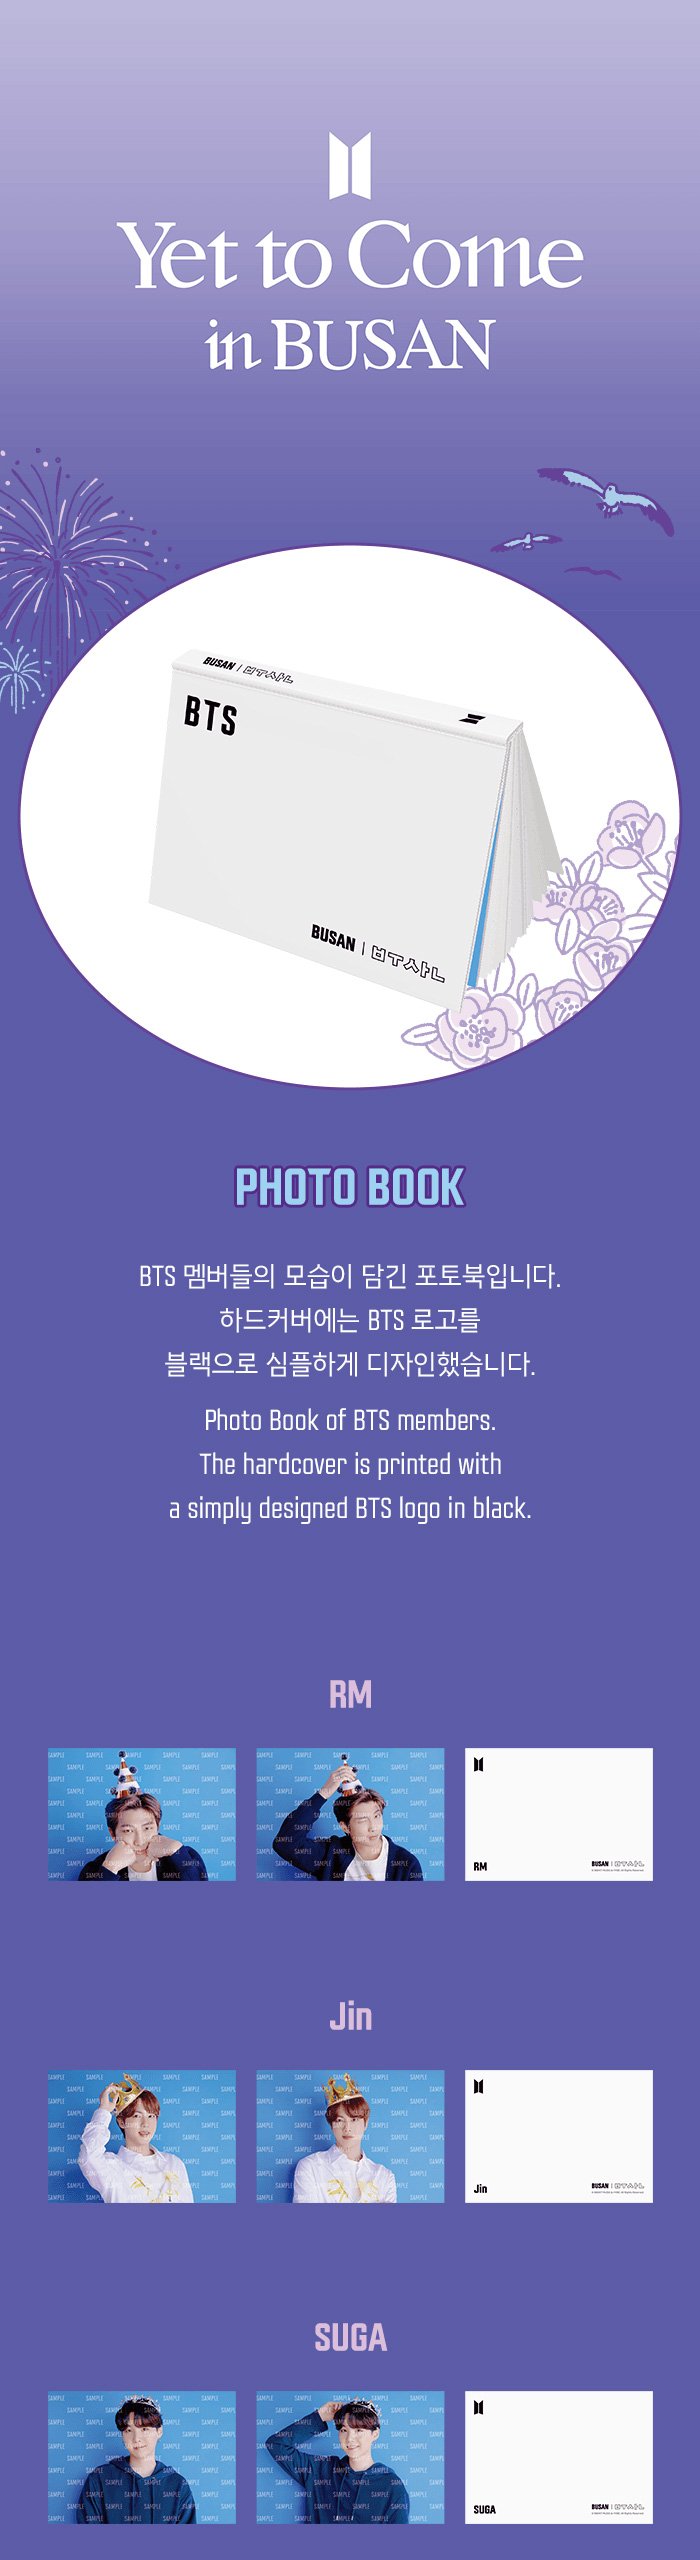 BTS Busan photobook 公式